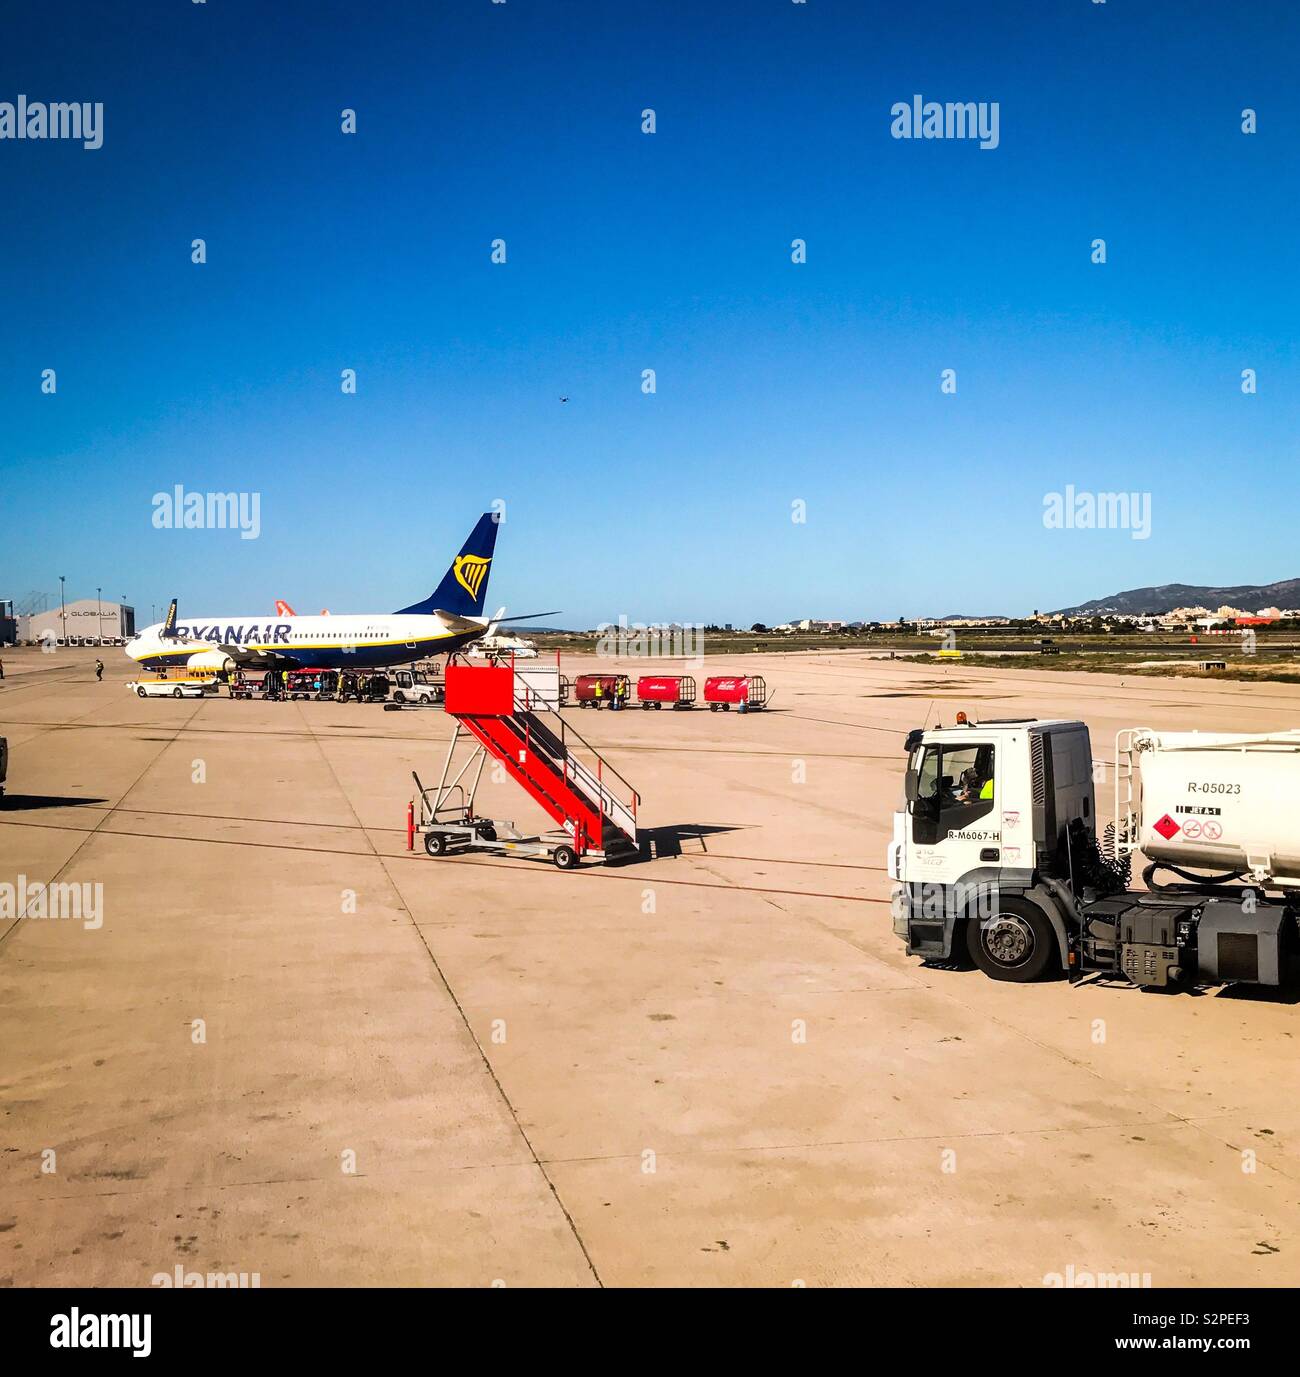 Palma de Mallorca airport Stock Photo